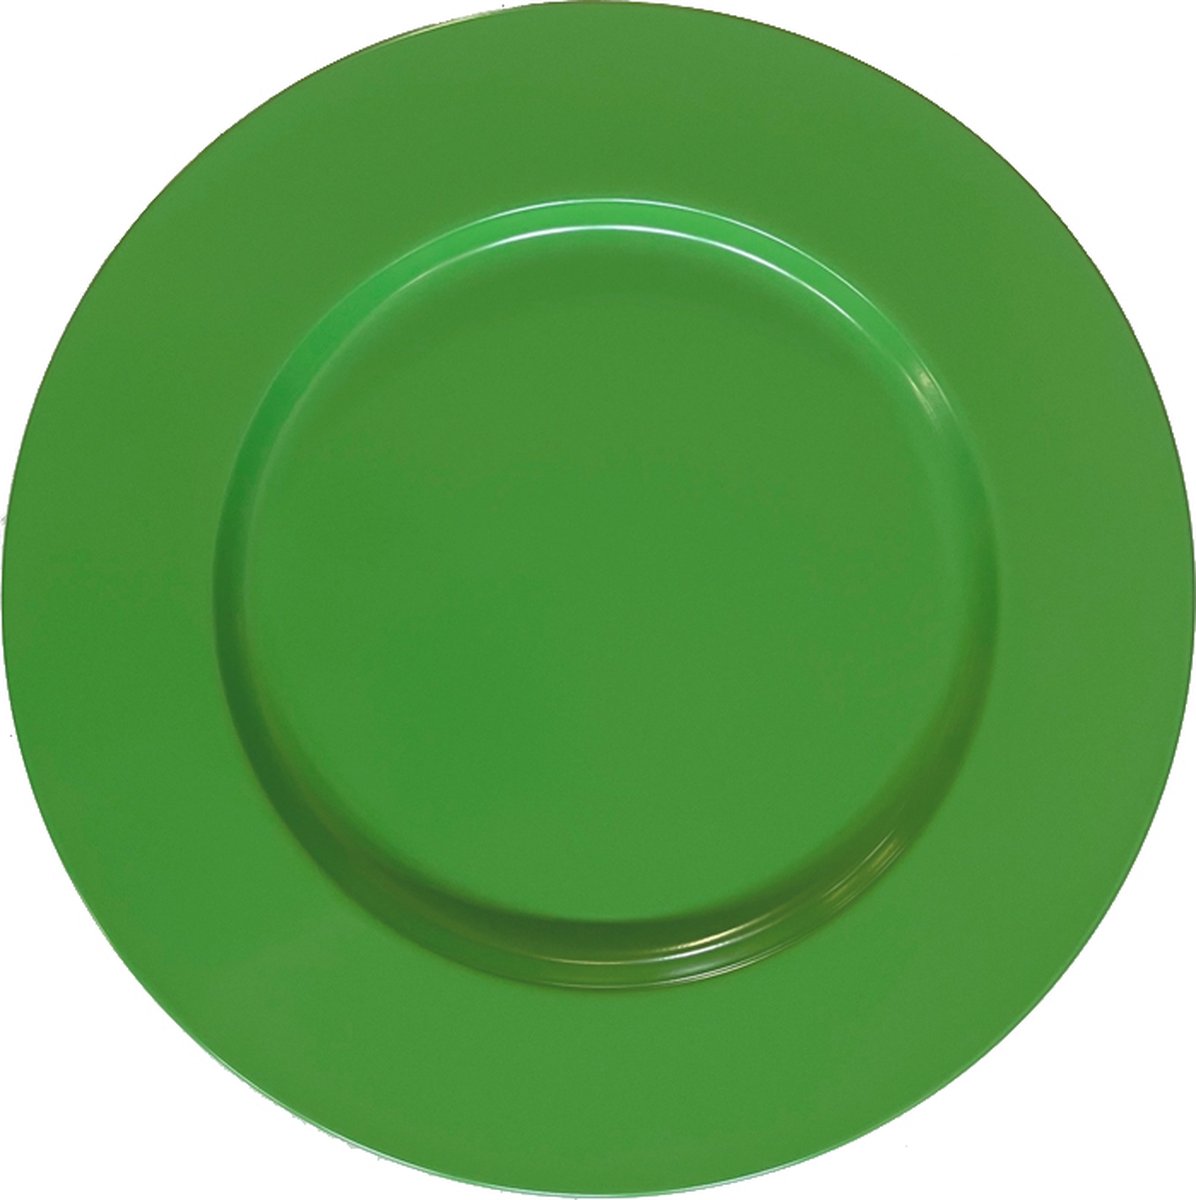 Metaal onderbord groen in set van 6 stuks